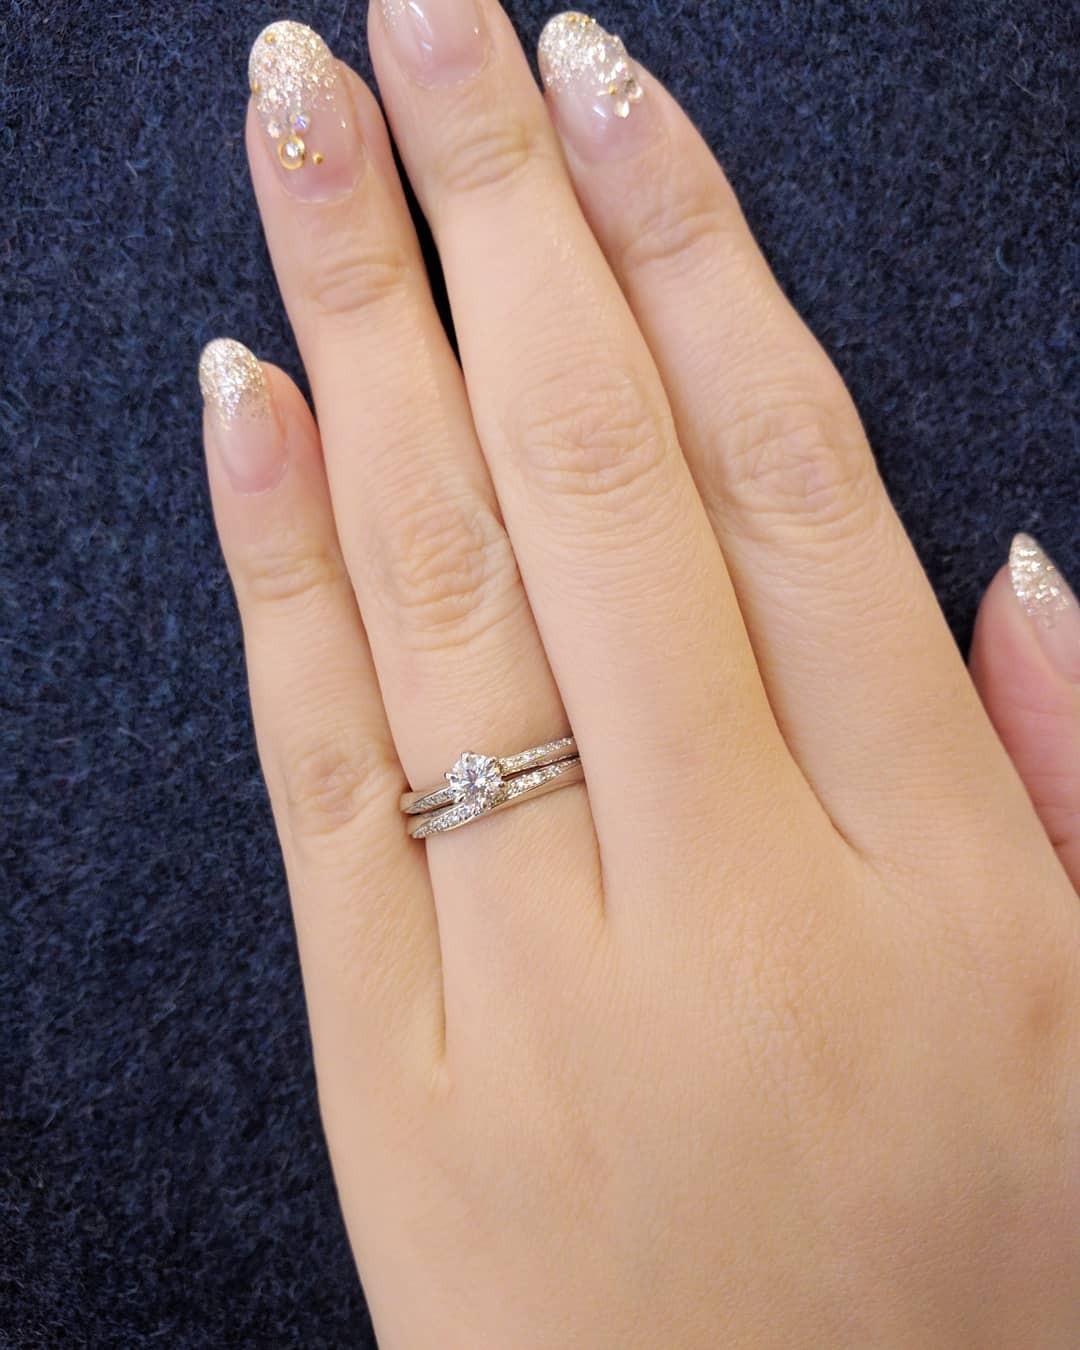 婚約指輪と結婚指輪の重ねつけが可愛いセットリングBRIDGE銀座の人気デザインやわらかな春風、美しいウェーブラインのダイヤモンドがエレガント